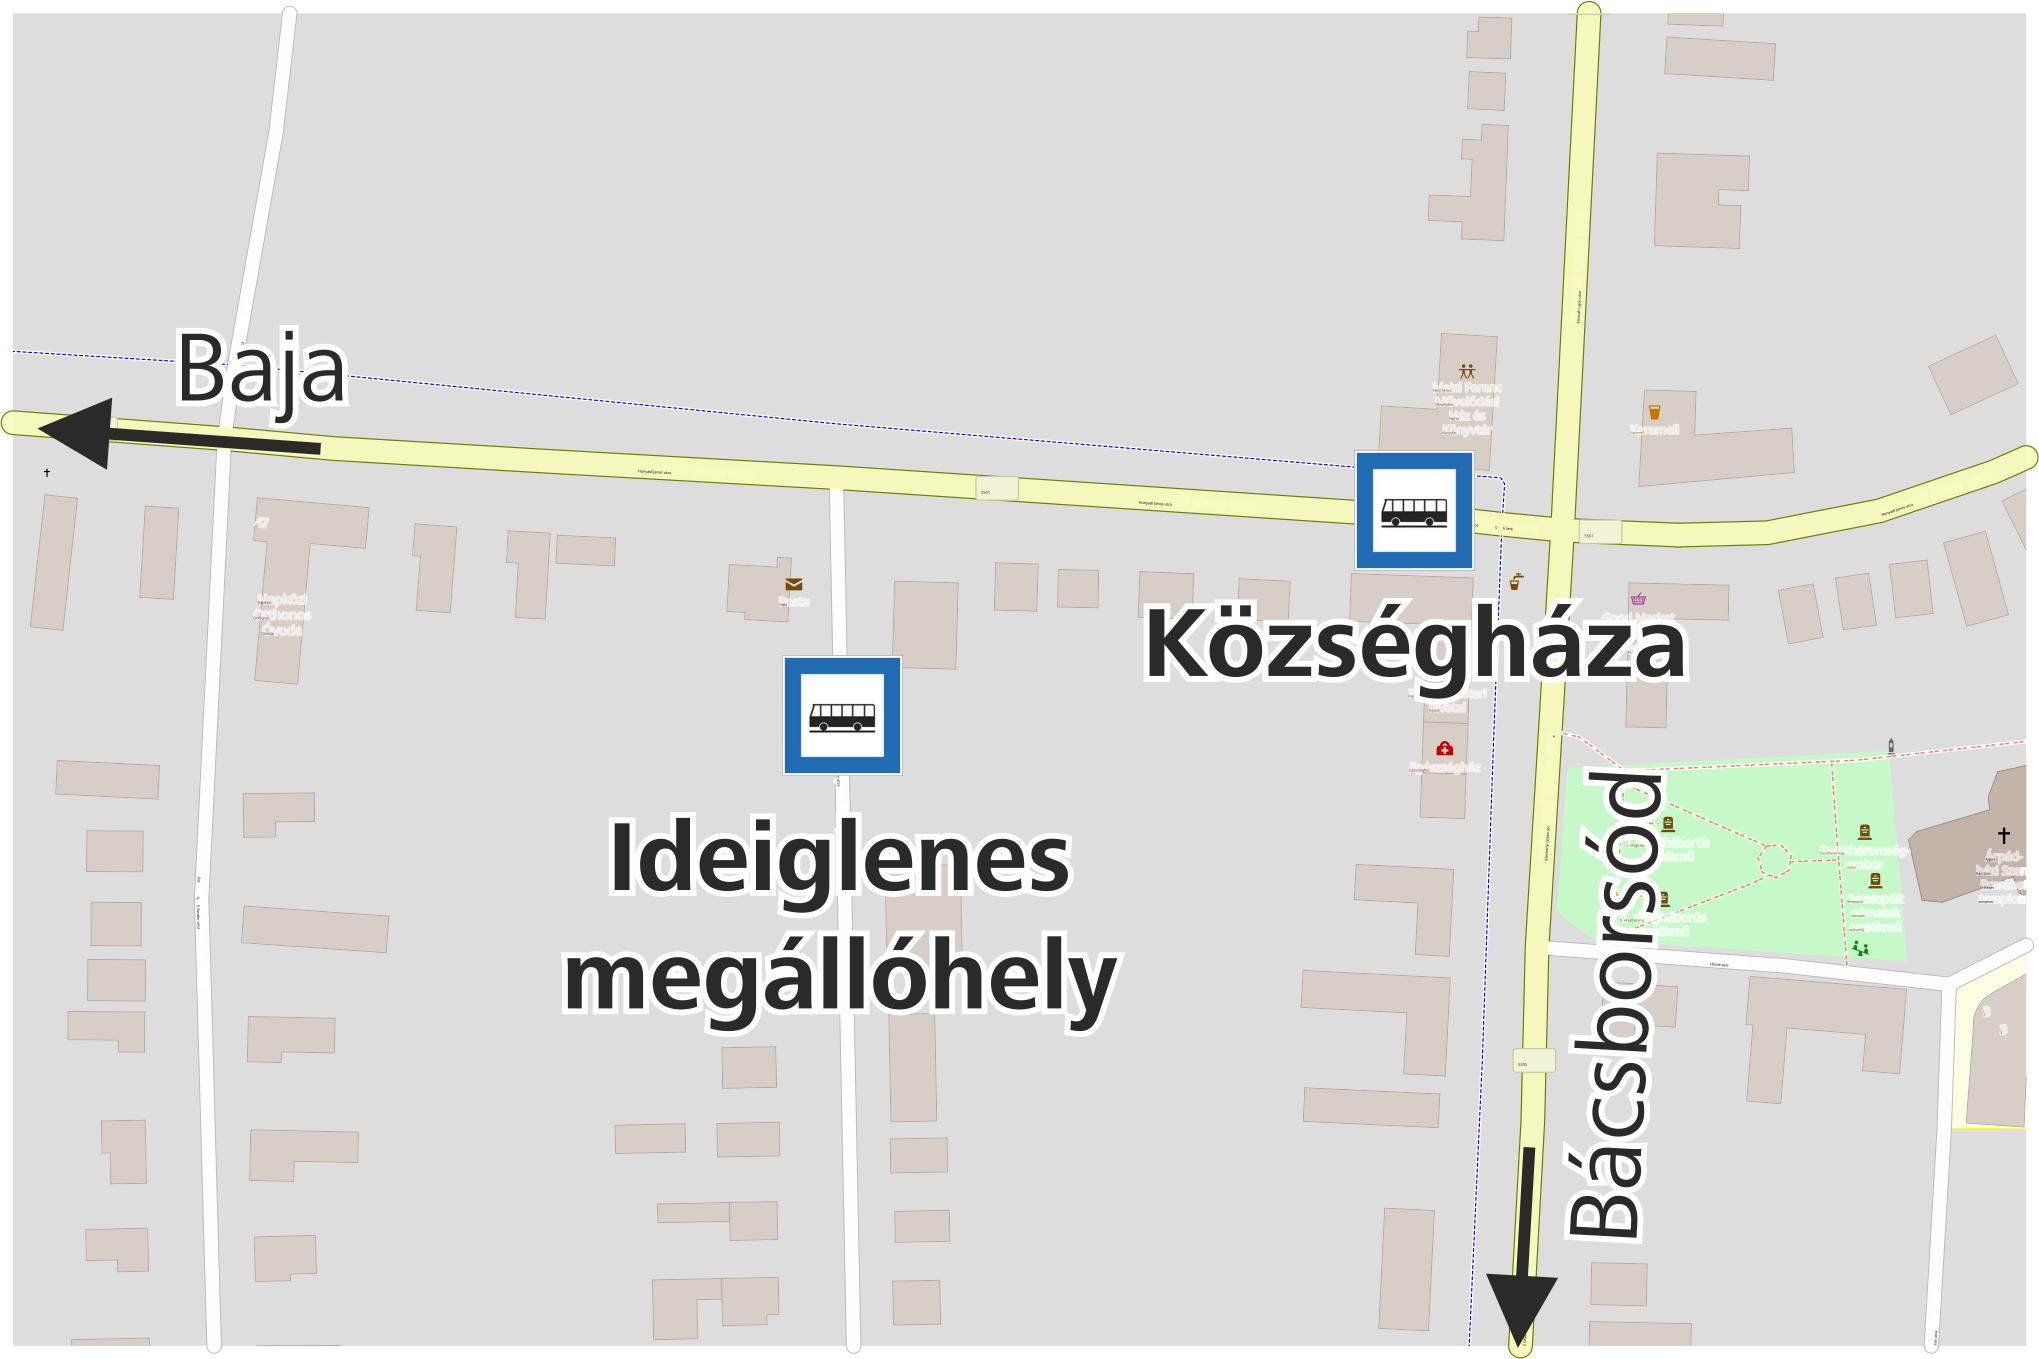 Ideiglenes megállóhely jelölése térképen.